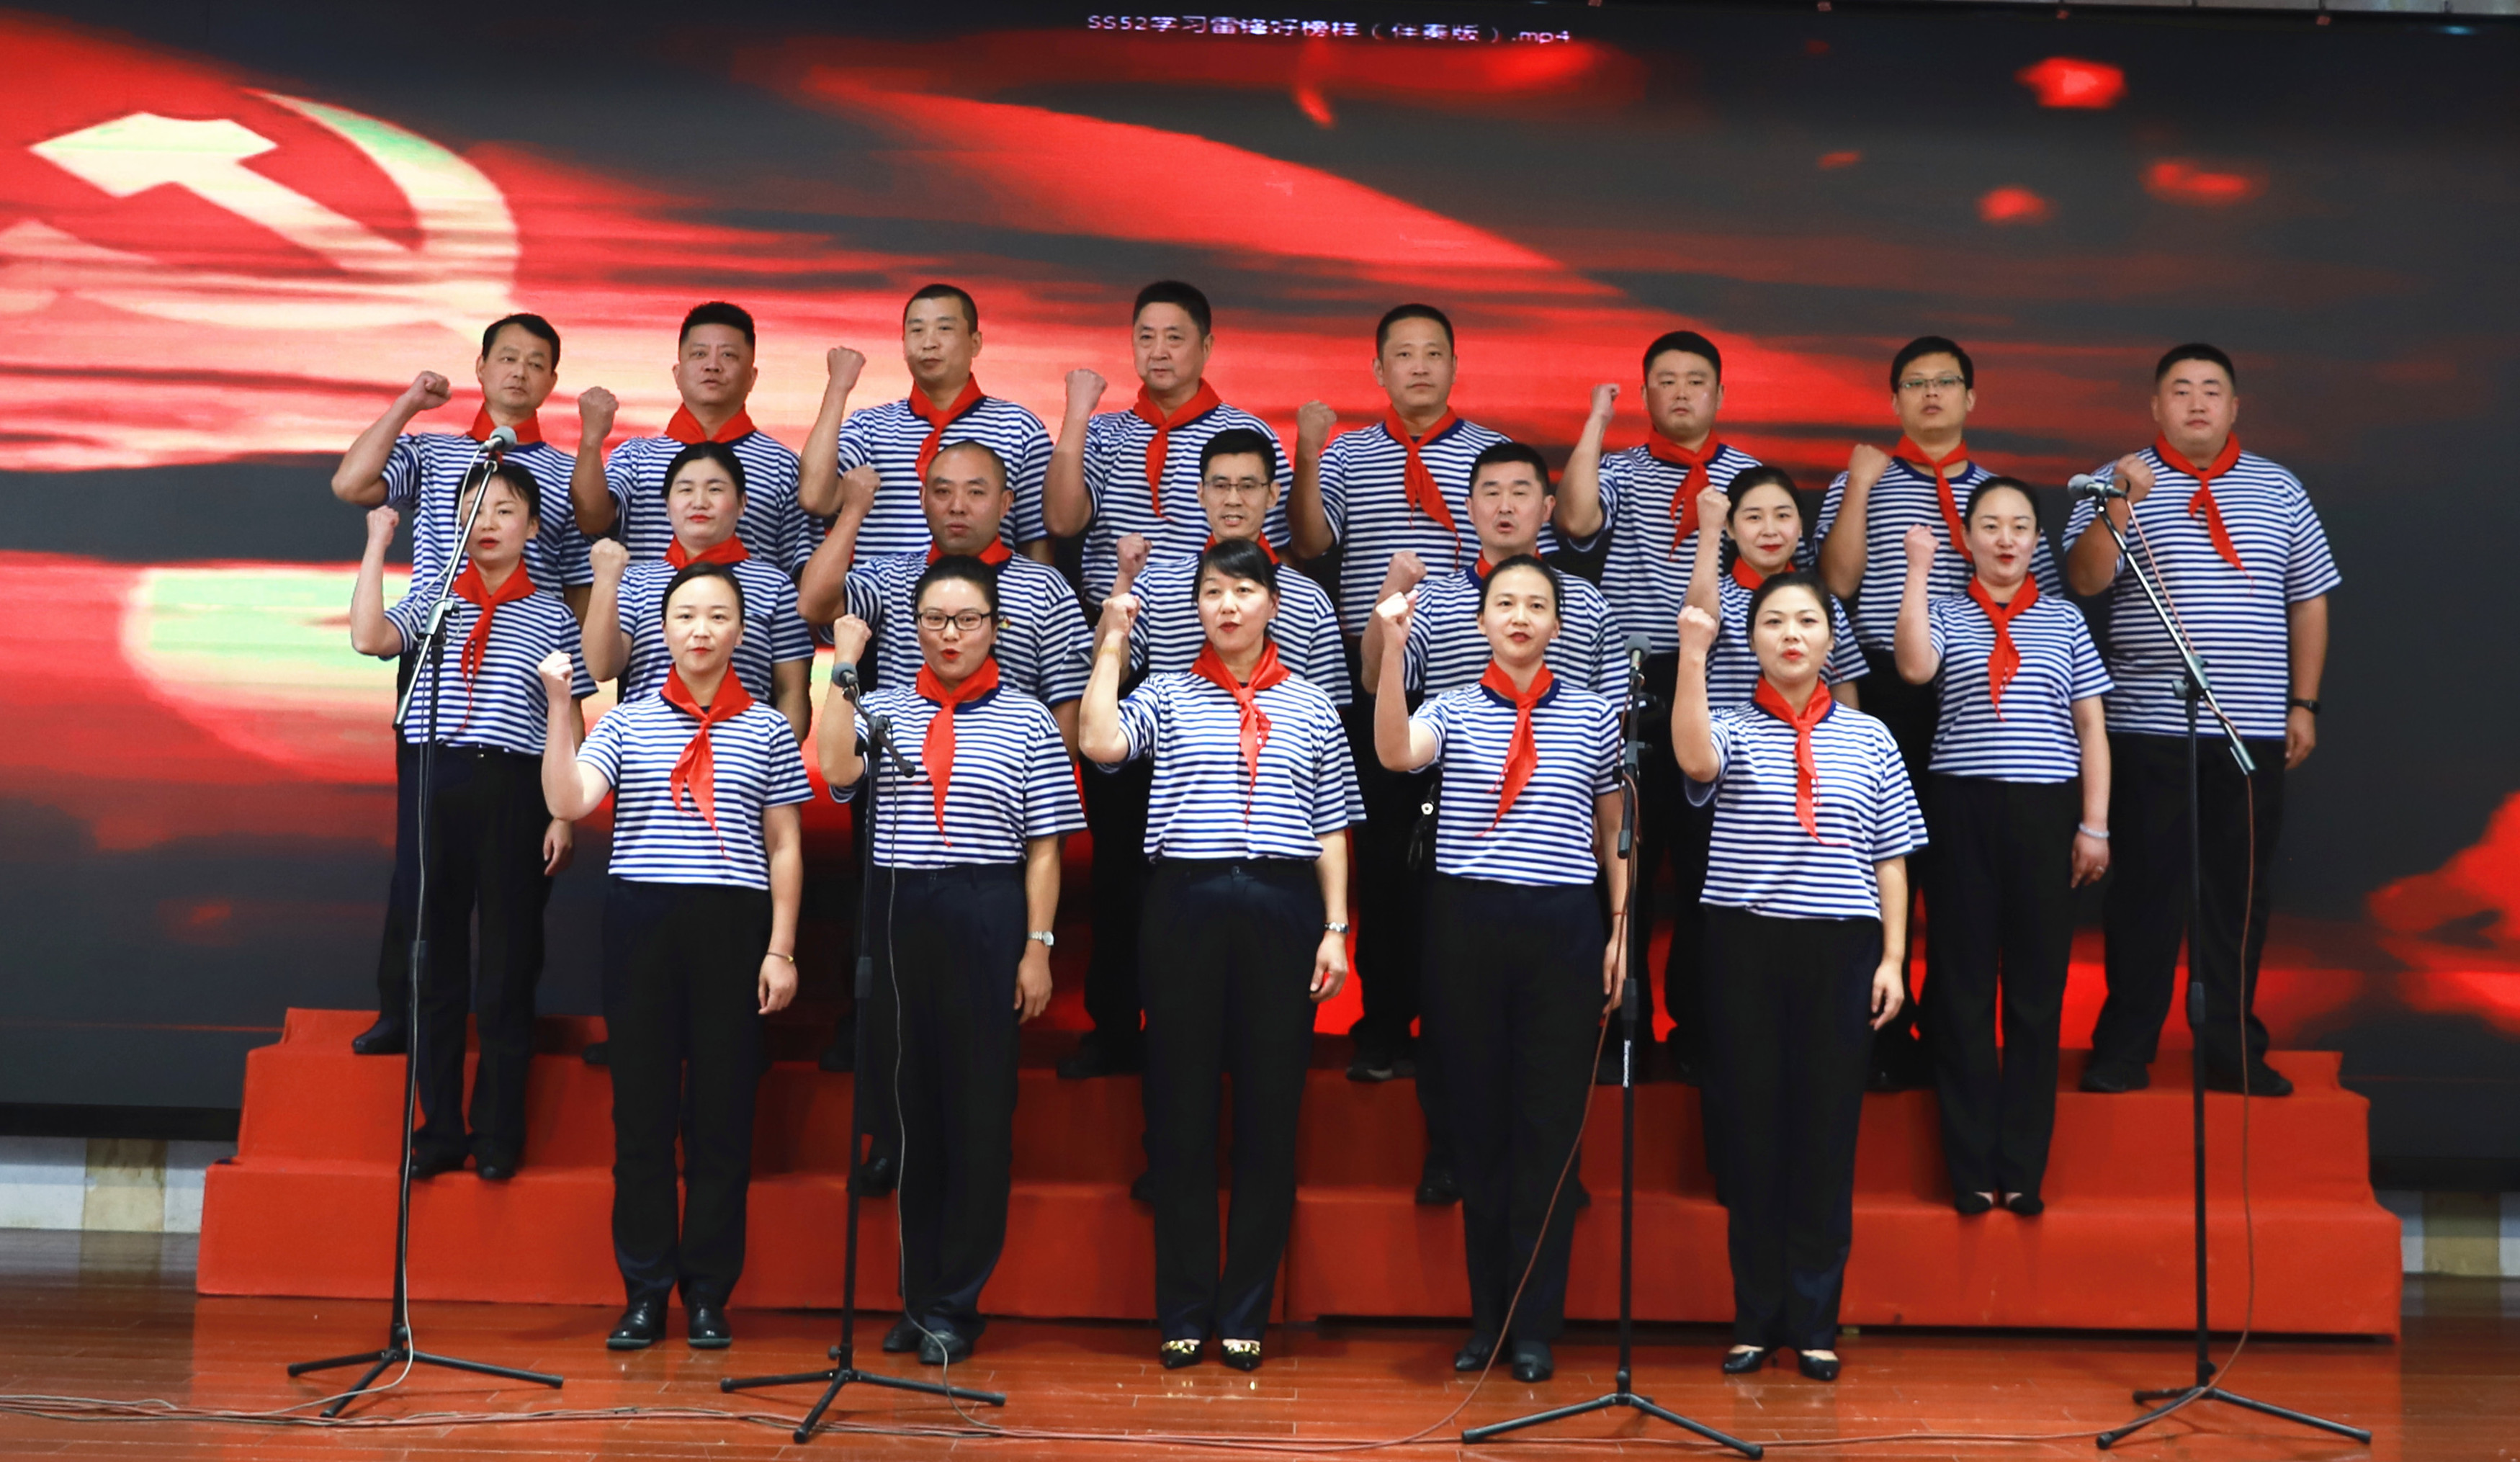 芜湖公交举办“颂歌献给党、永远跟党走 ”合唱比赛